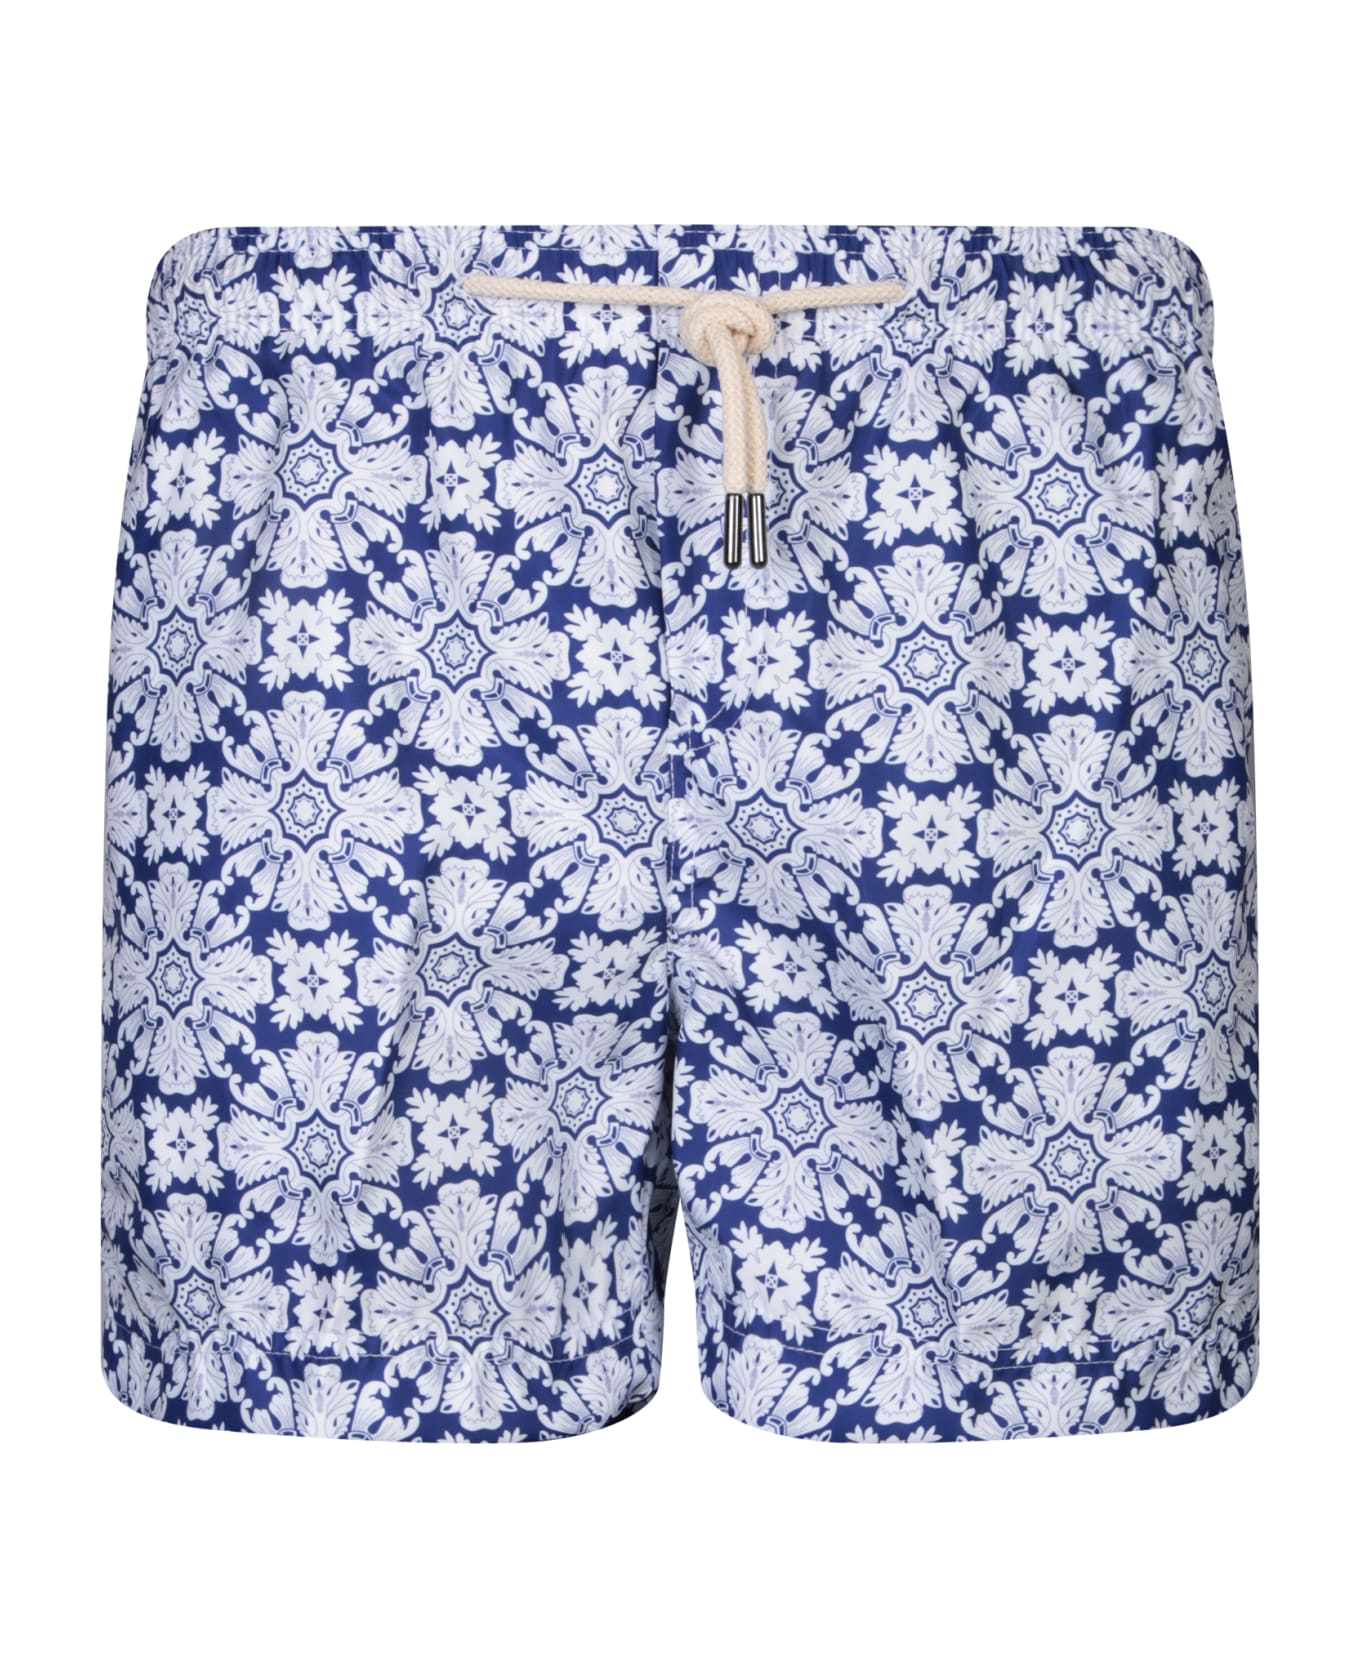 Peninsula Swimwear Floral Pattern Swim Shorts White/blue By Peninsula - Blue